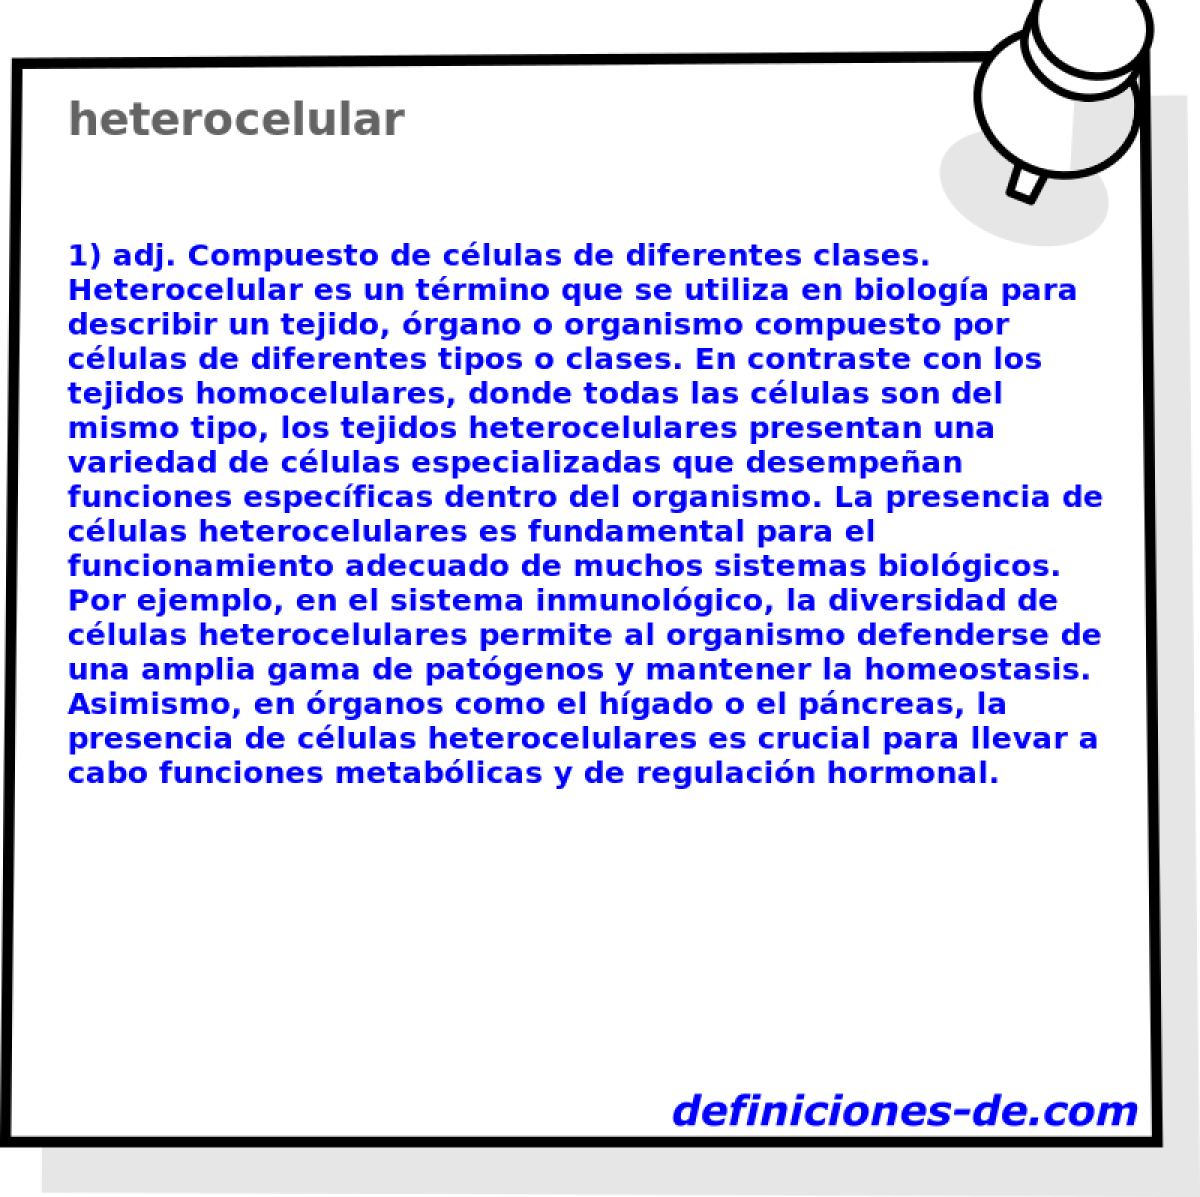 heterocelular 